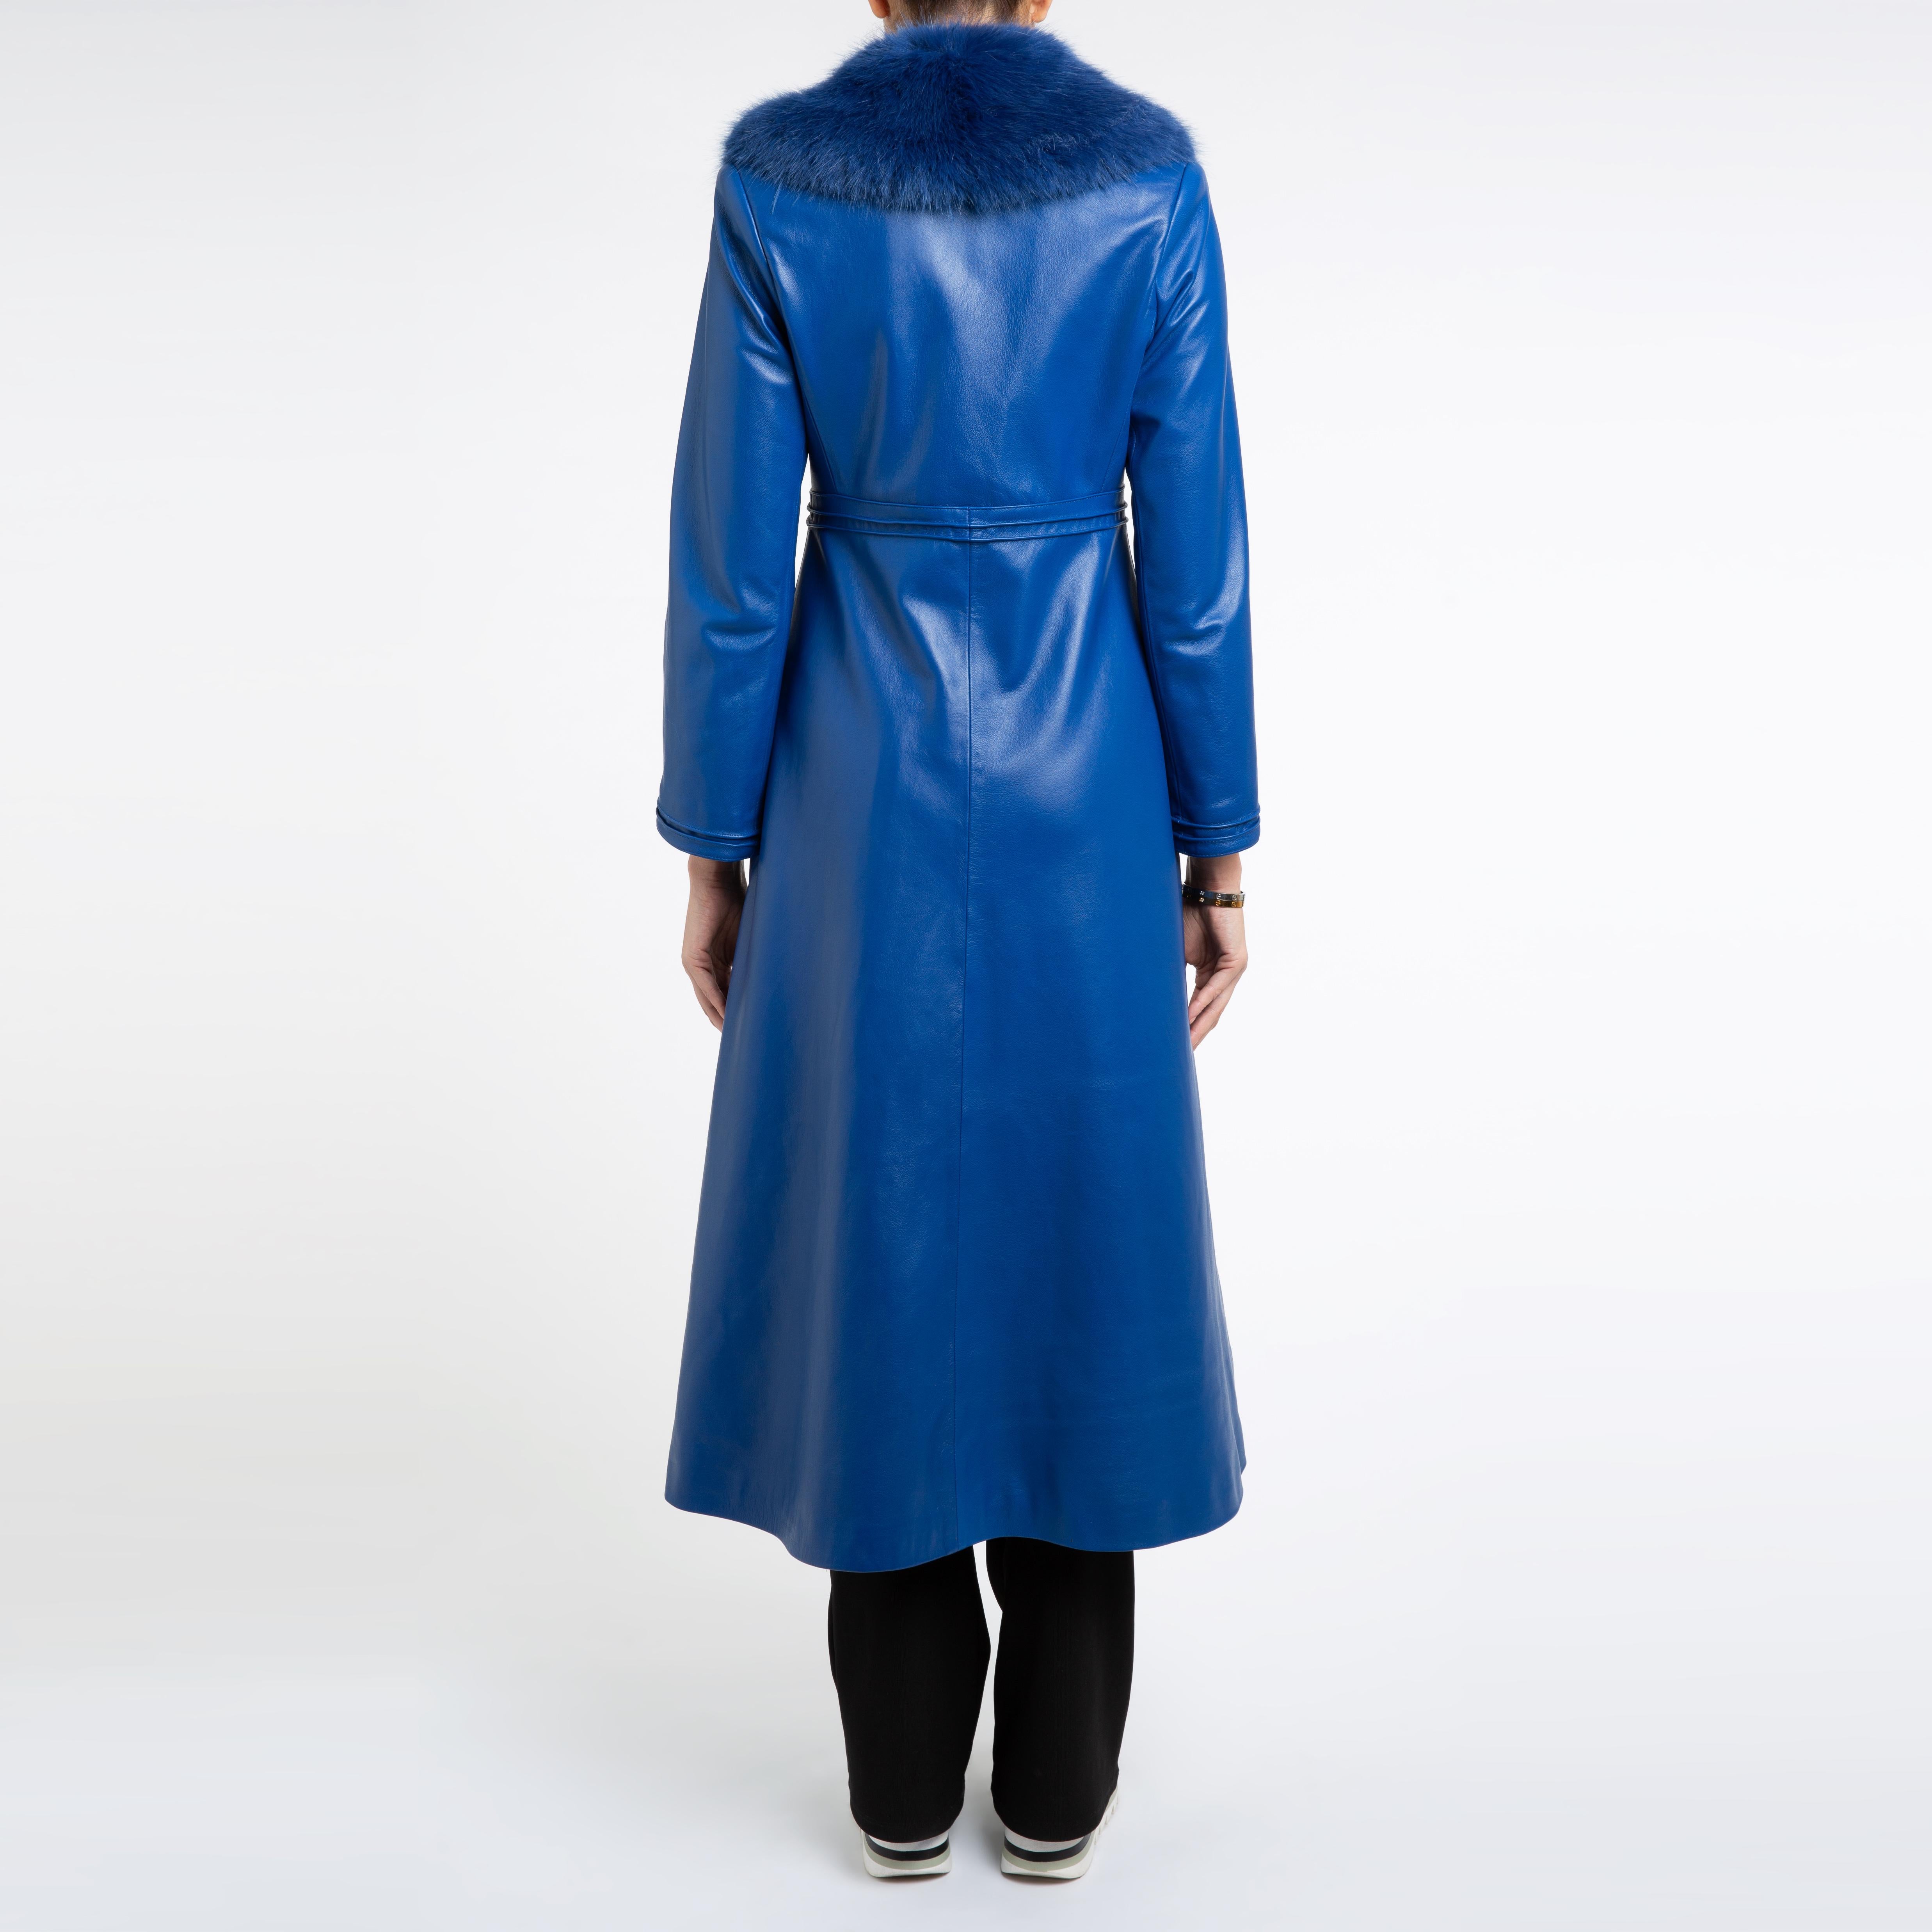 Verheyen London Edward Leather Coat in Blue with Faux Fur - Size uk 8  For Sale 1